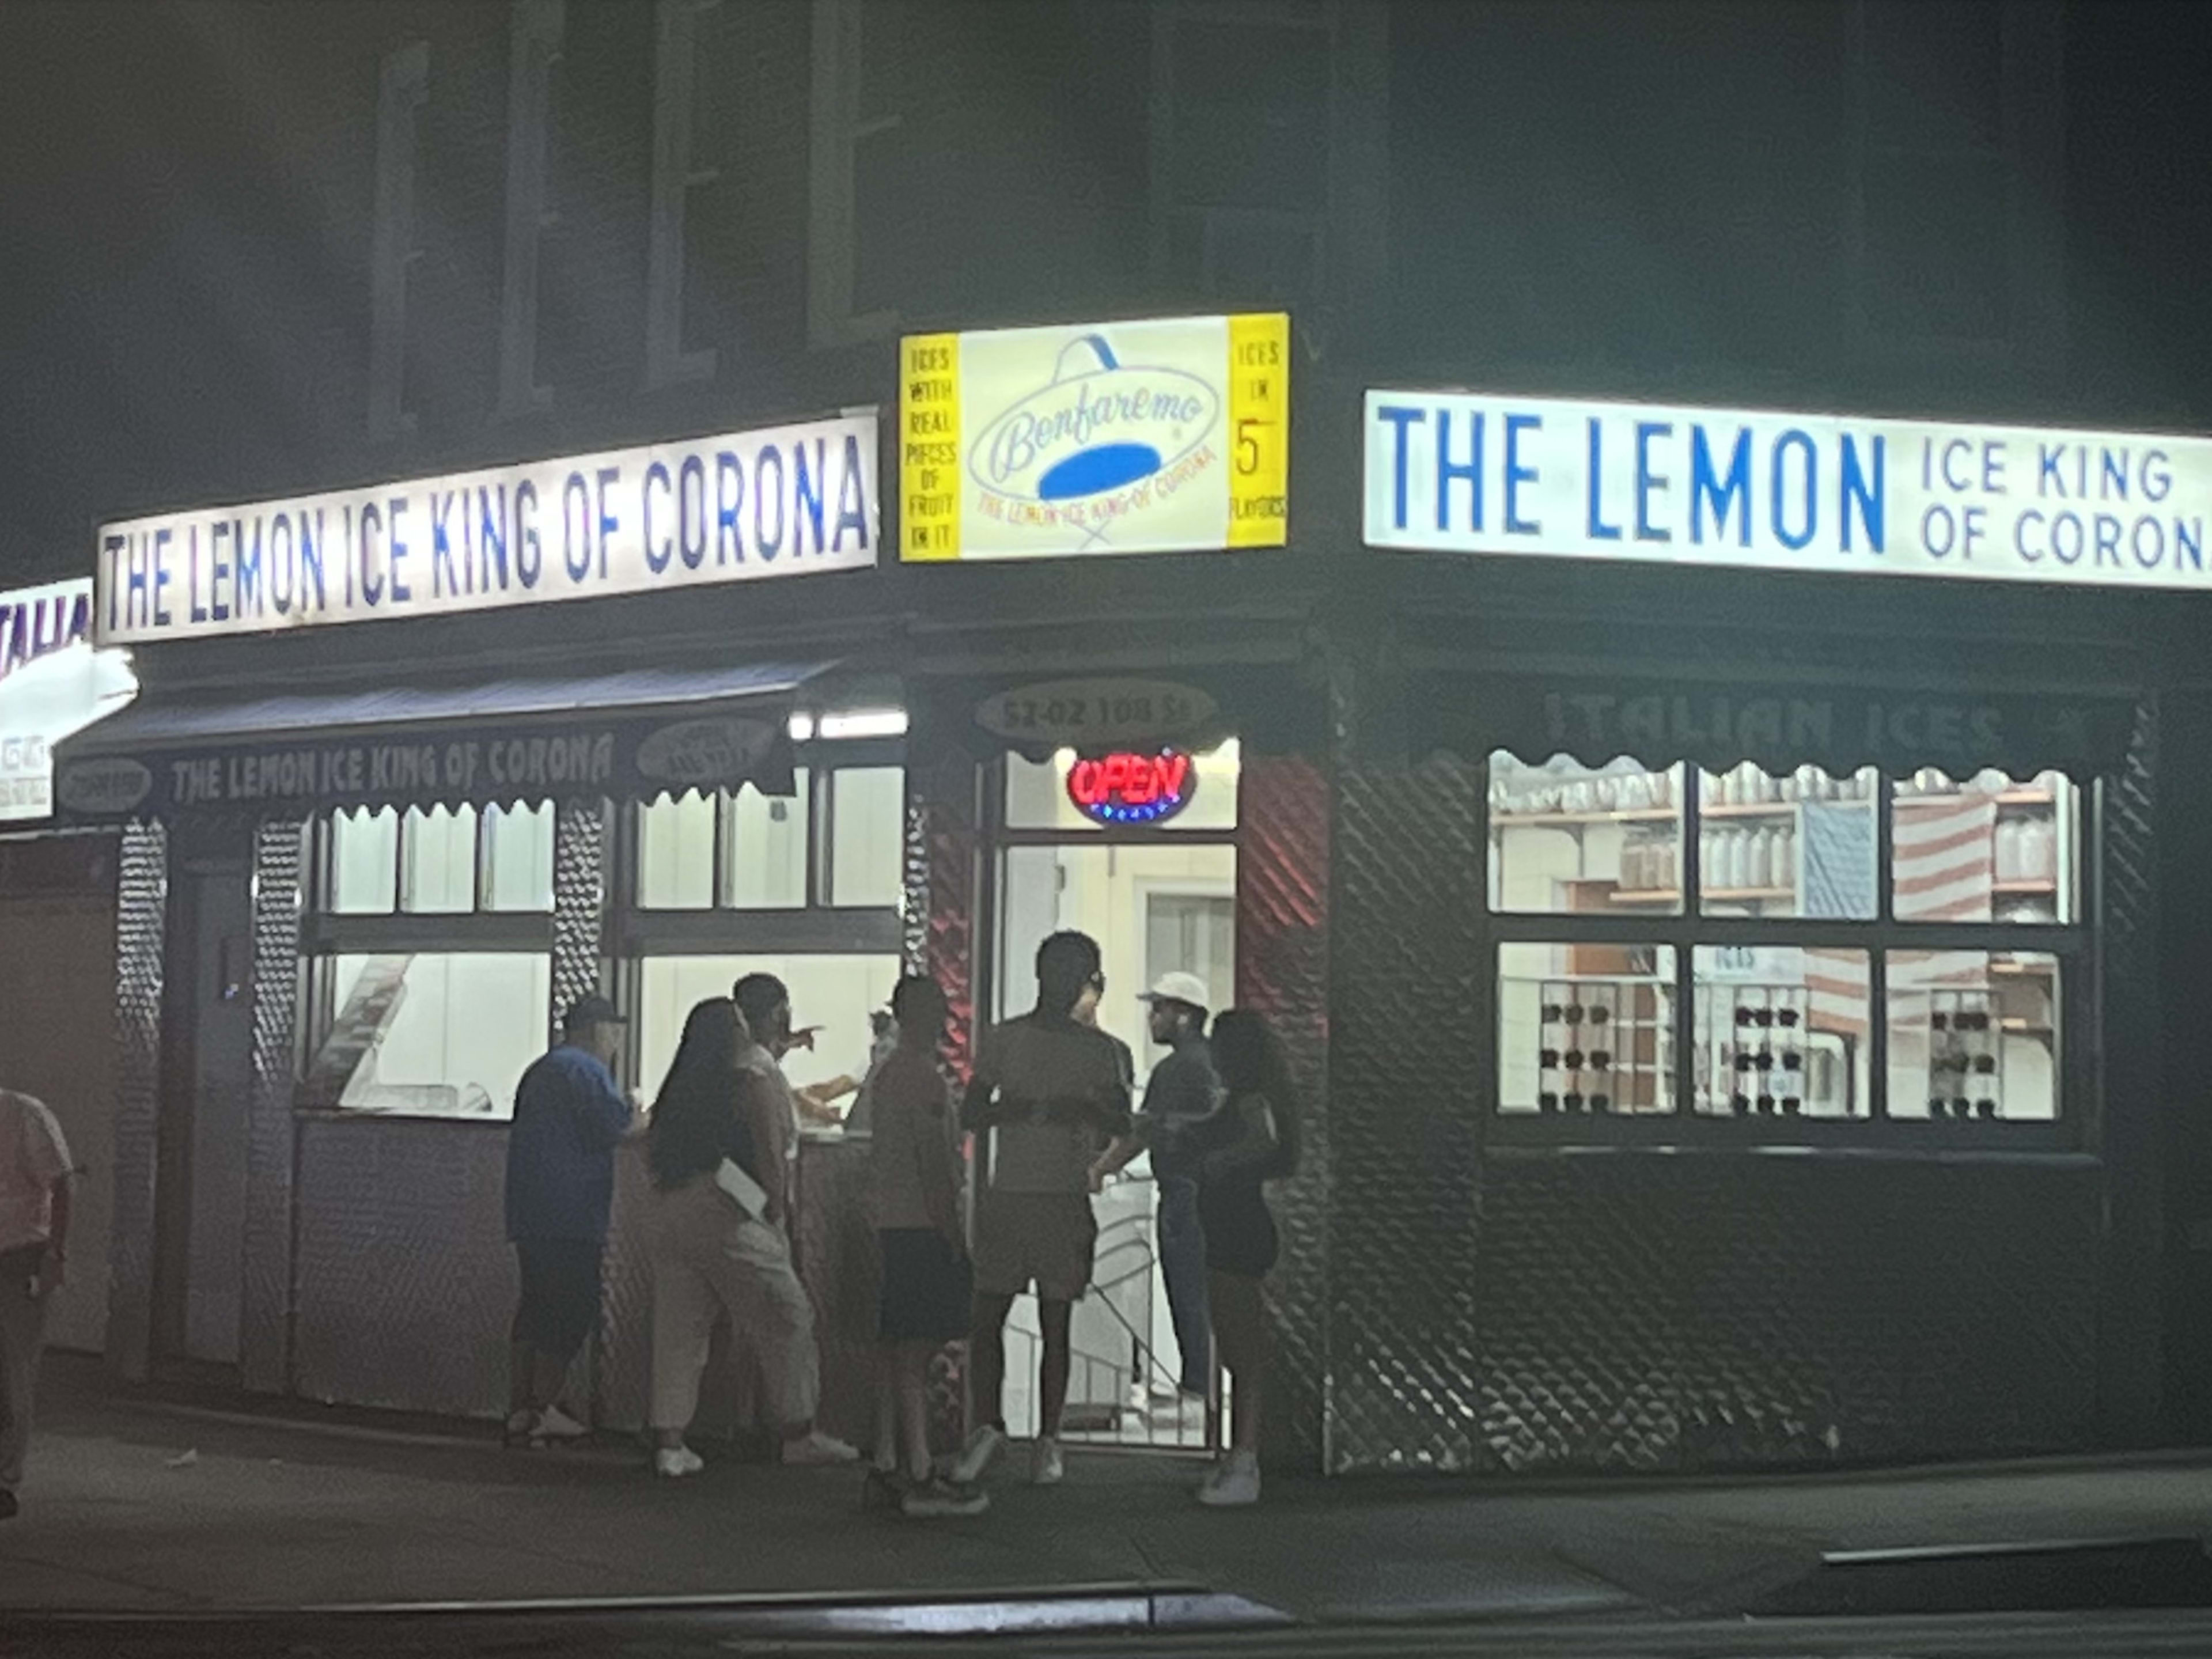 The Lemon Ice King of Corona image